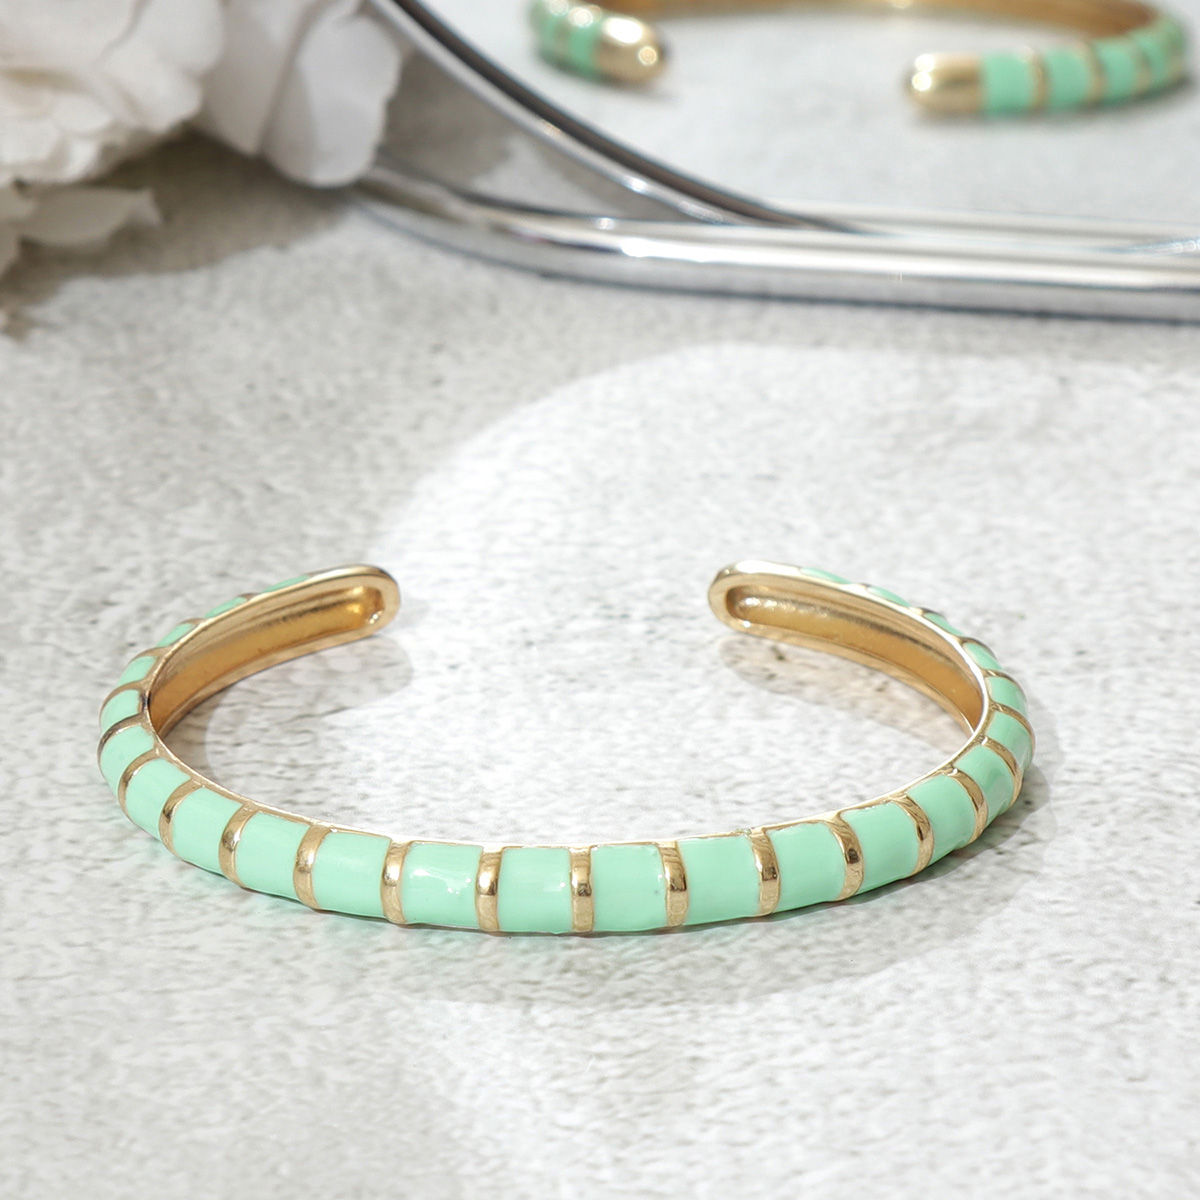 Elegant Stylish Green Bracelet